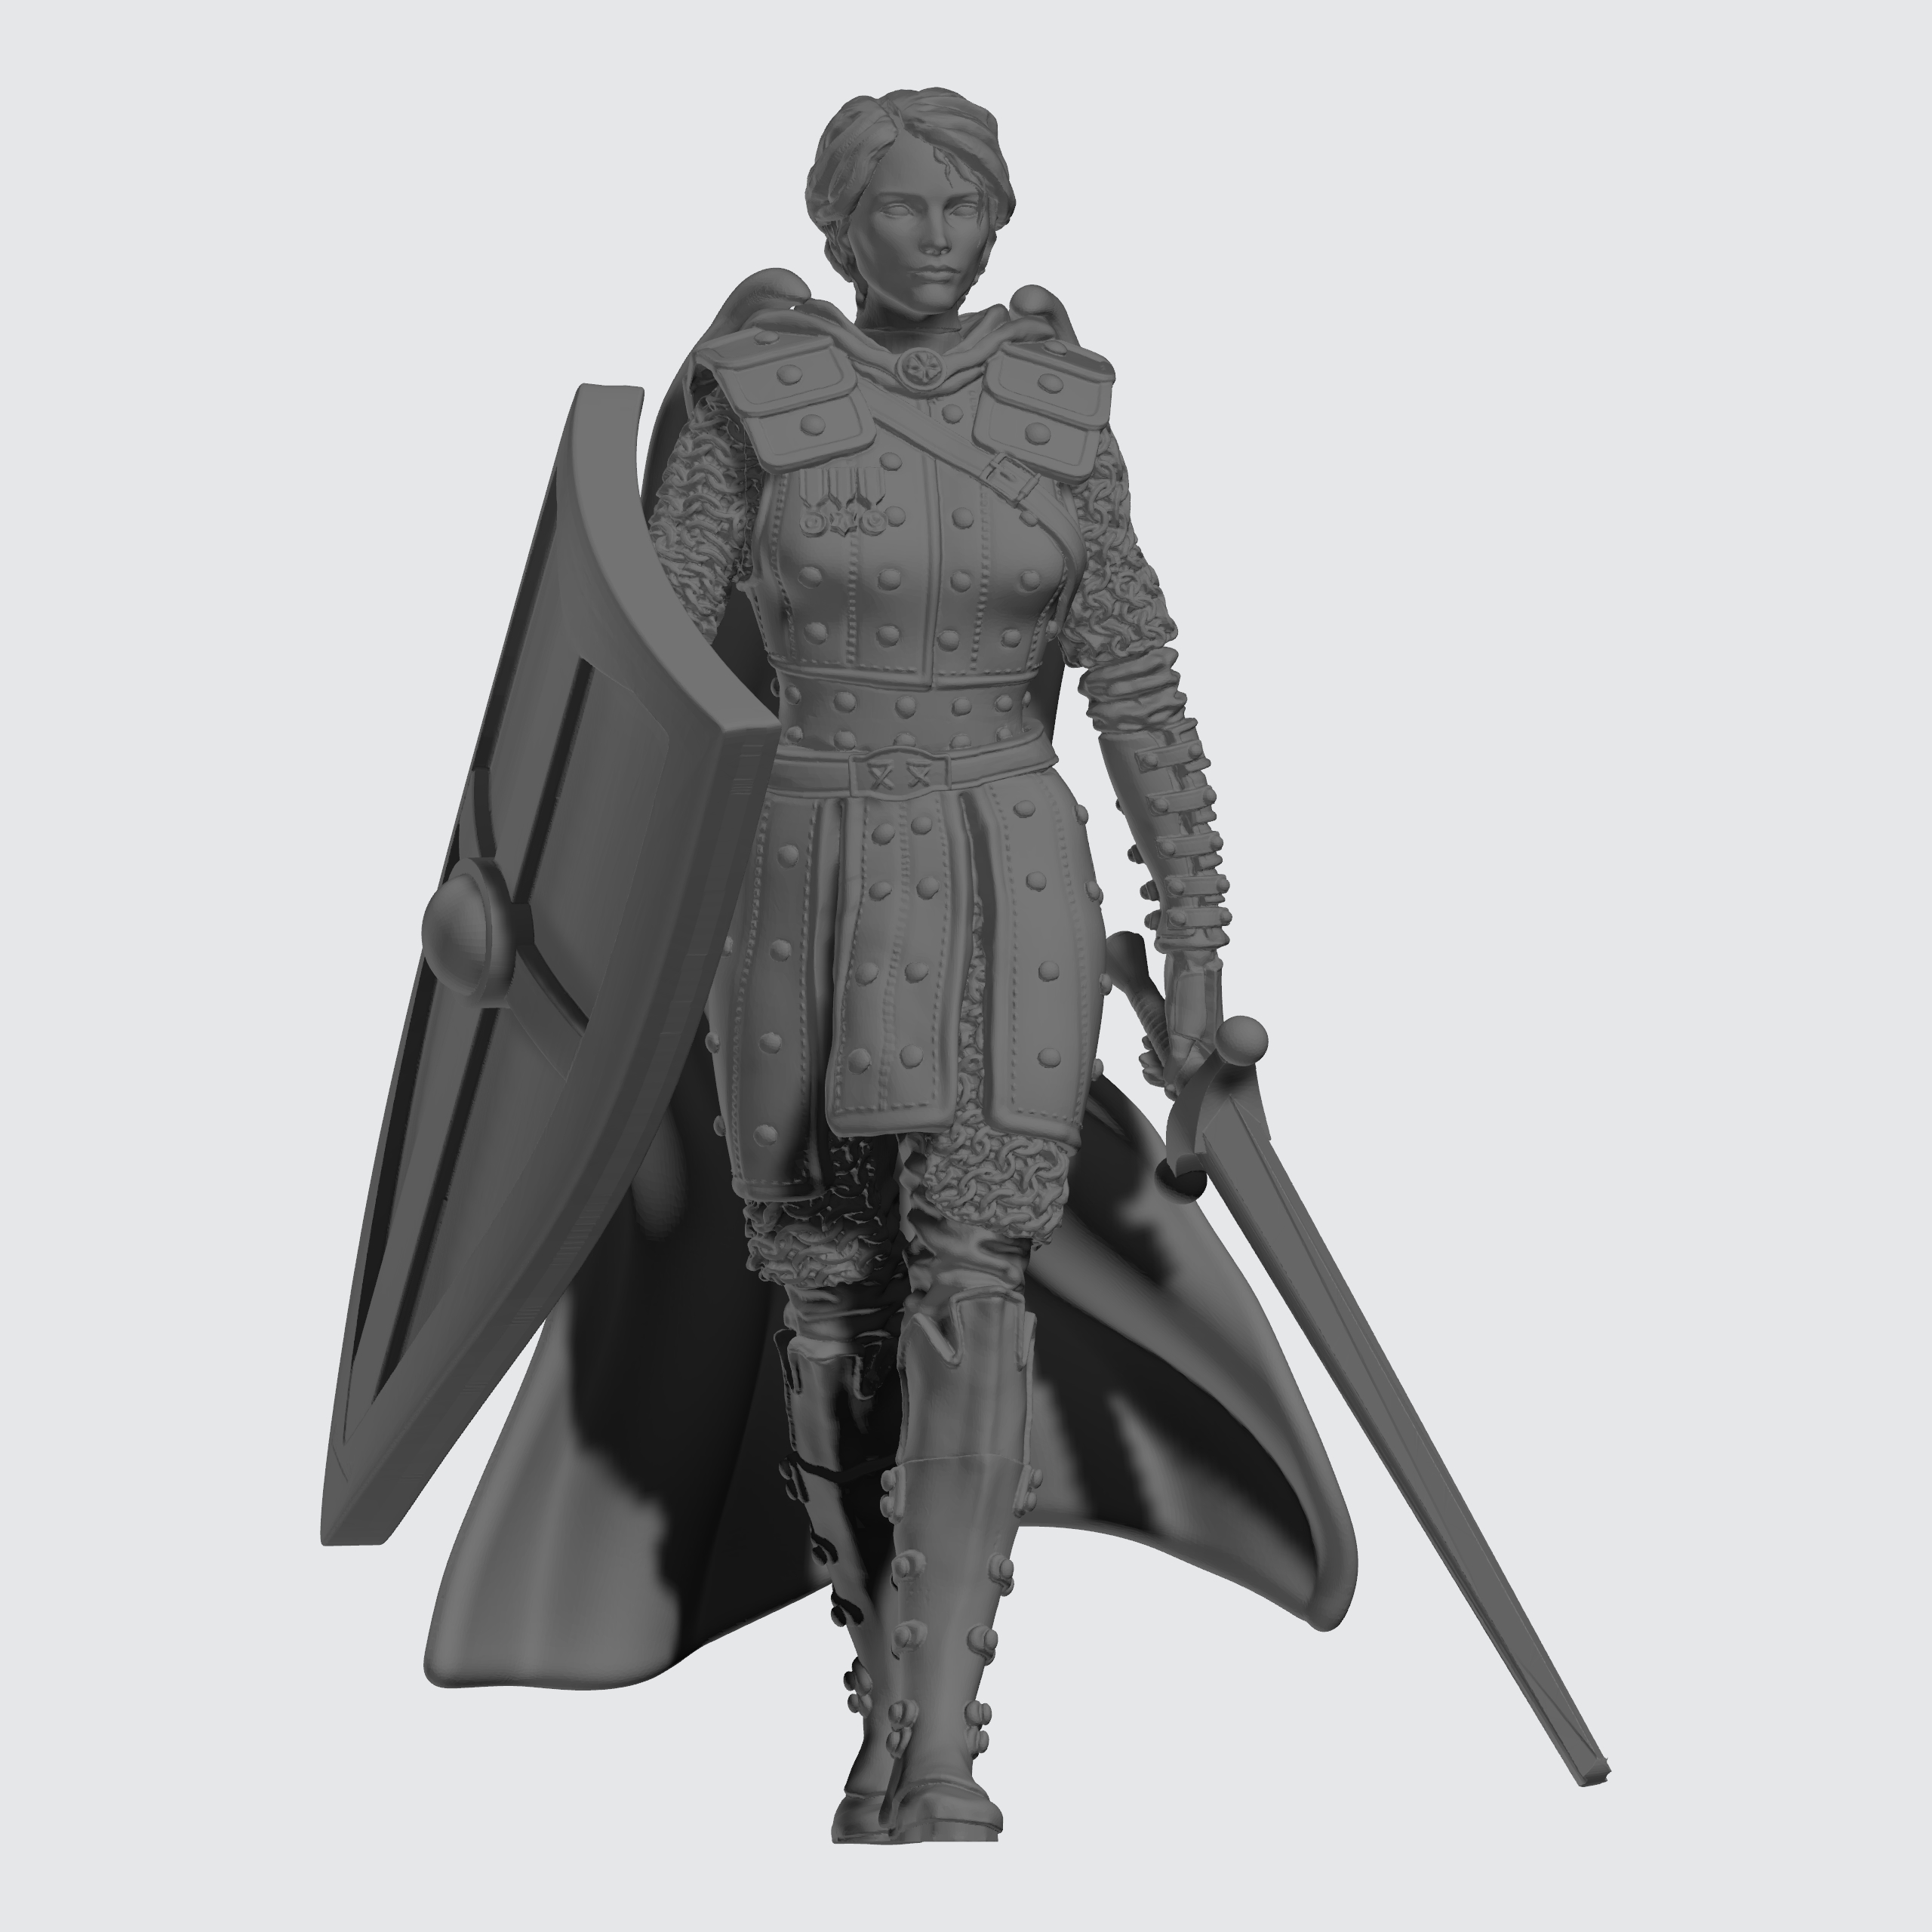 Kingdom of Celesia Individual Unit - Praetorian Pilot - Female Sculpt